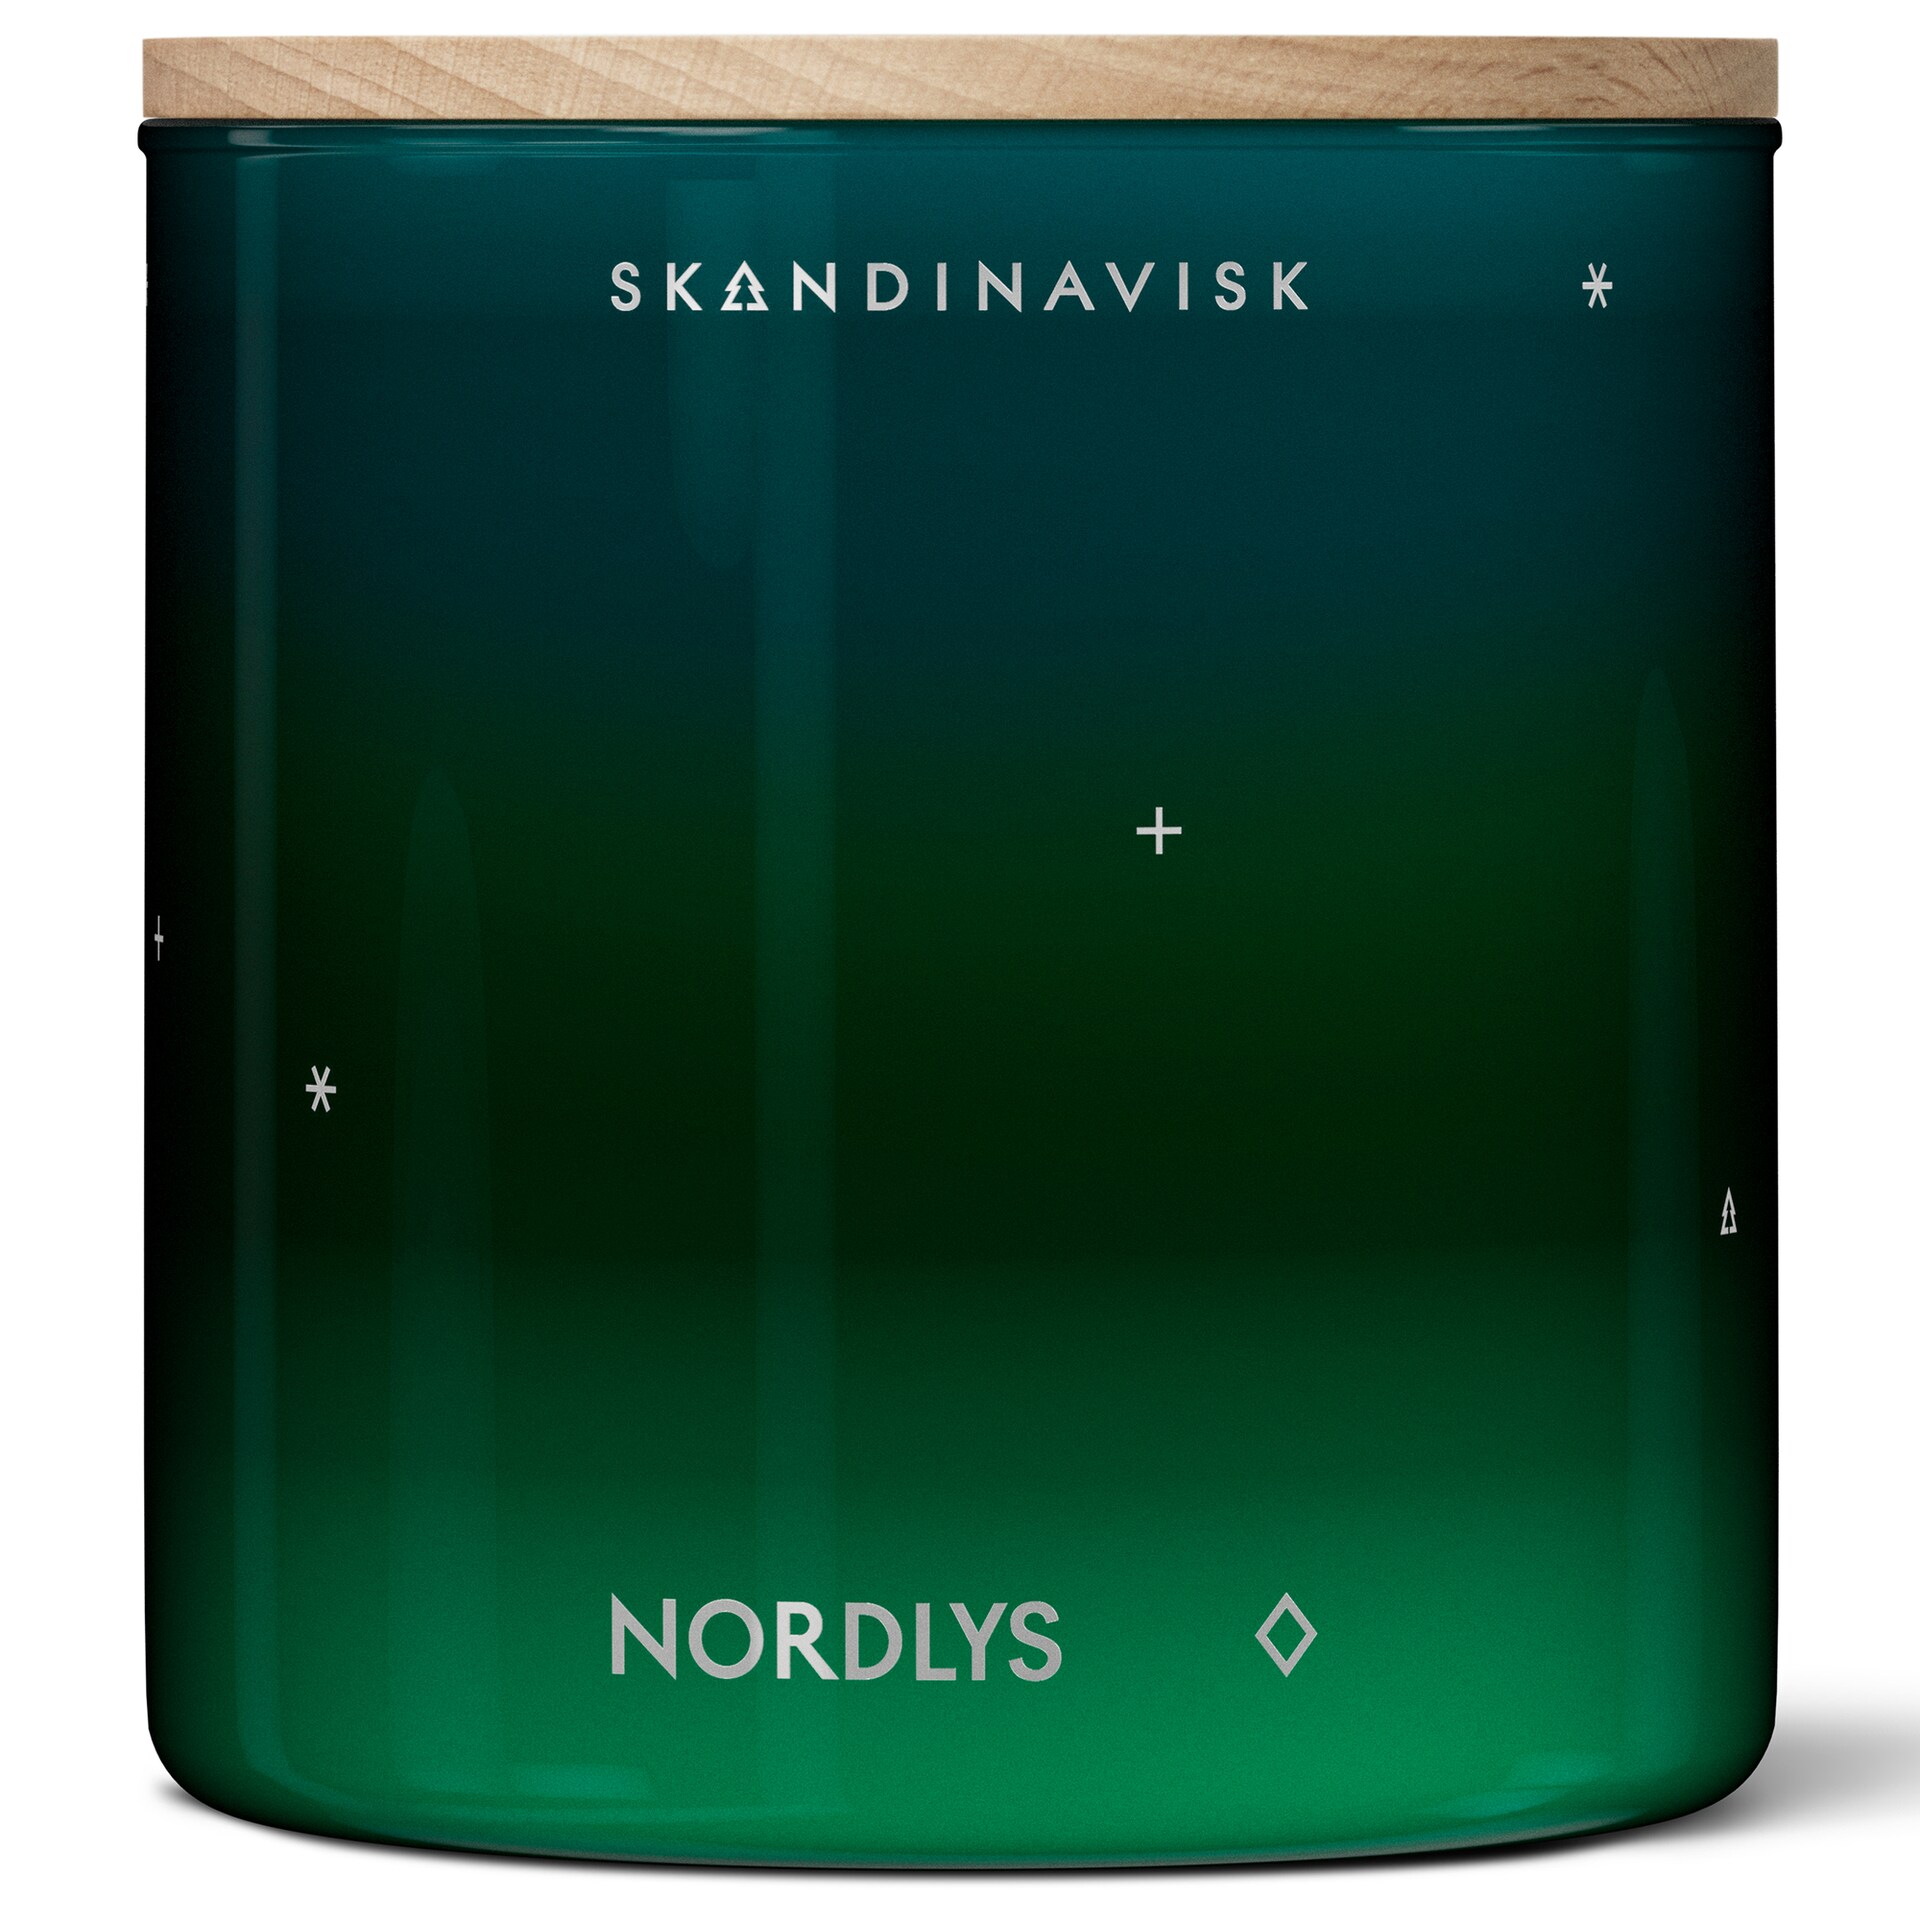 Skandinavisk Nordlys Doftljus 400g - Doftljus Glas